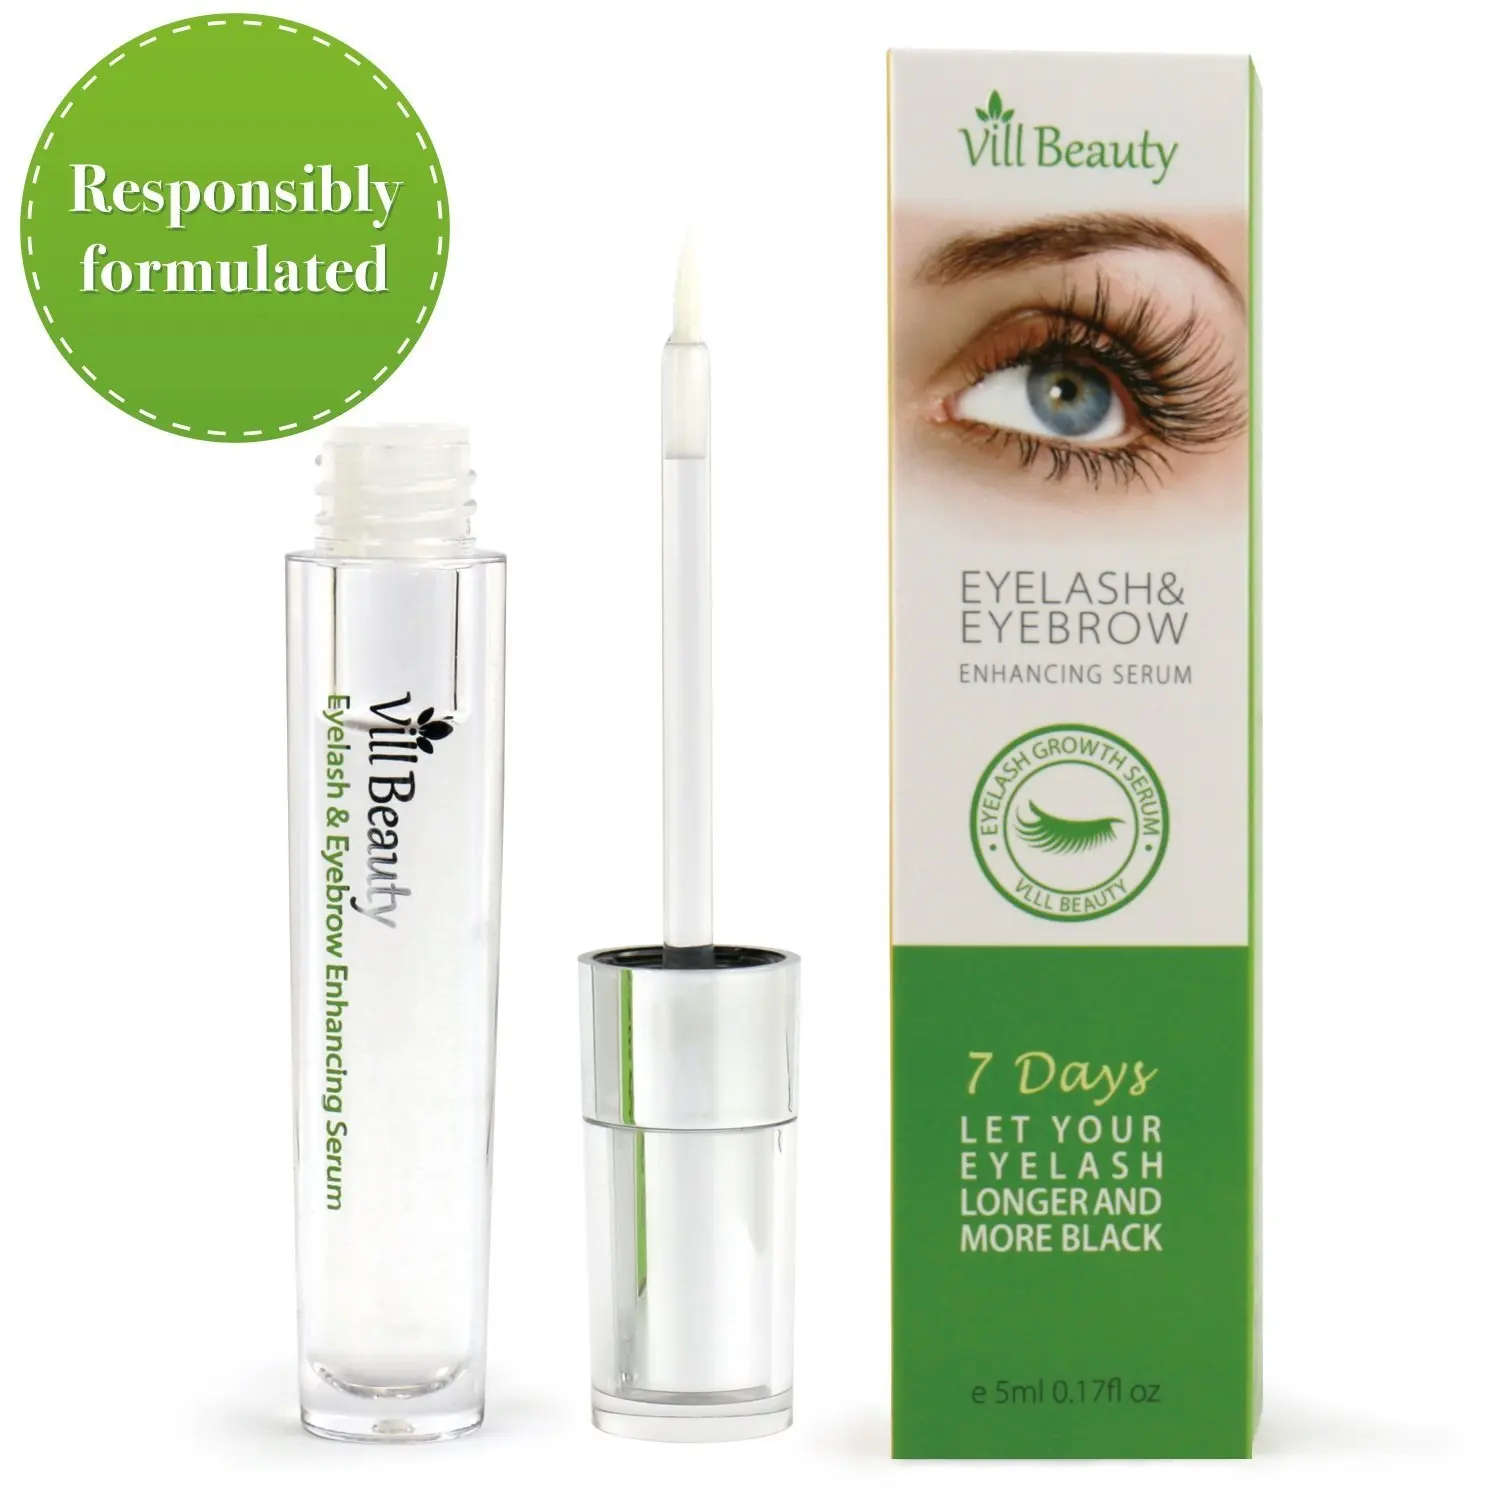 Eyelash enhancing serum